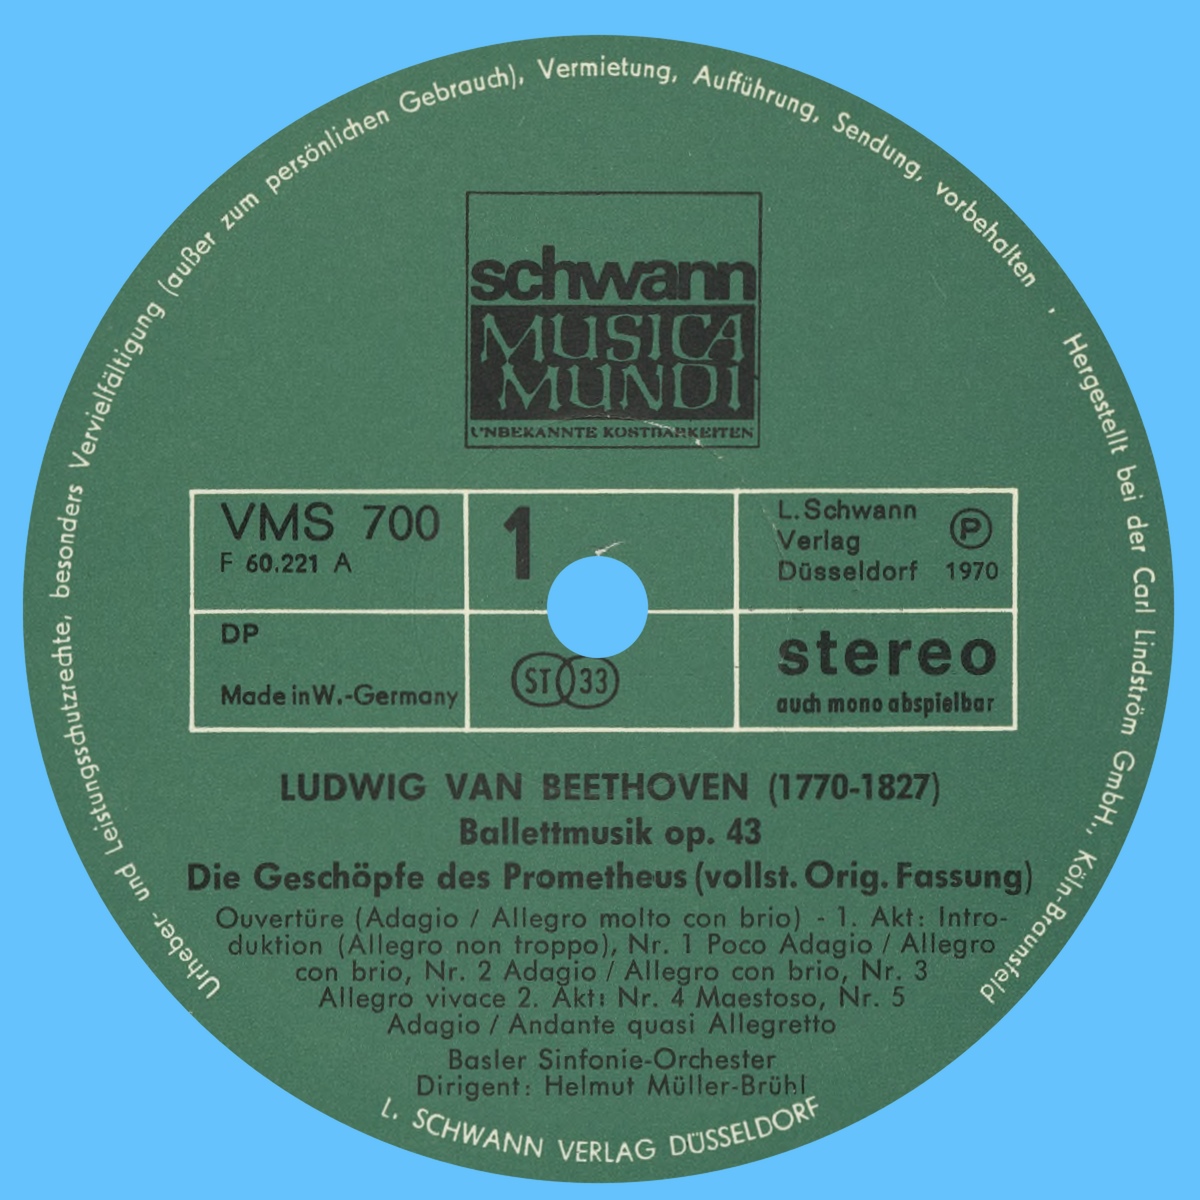 Étiquette recto du premier disque de l'album Schwann Musica Mundi VMS 700/701